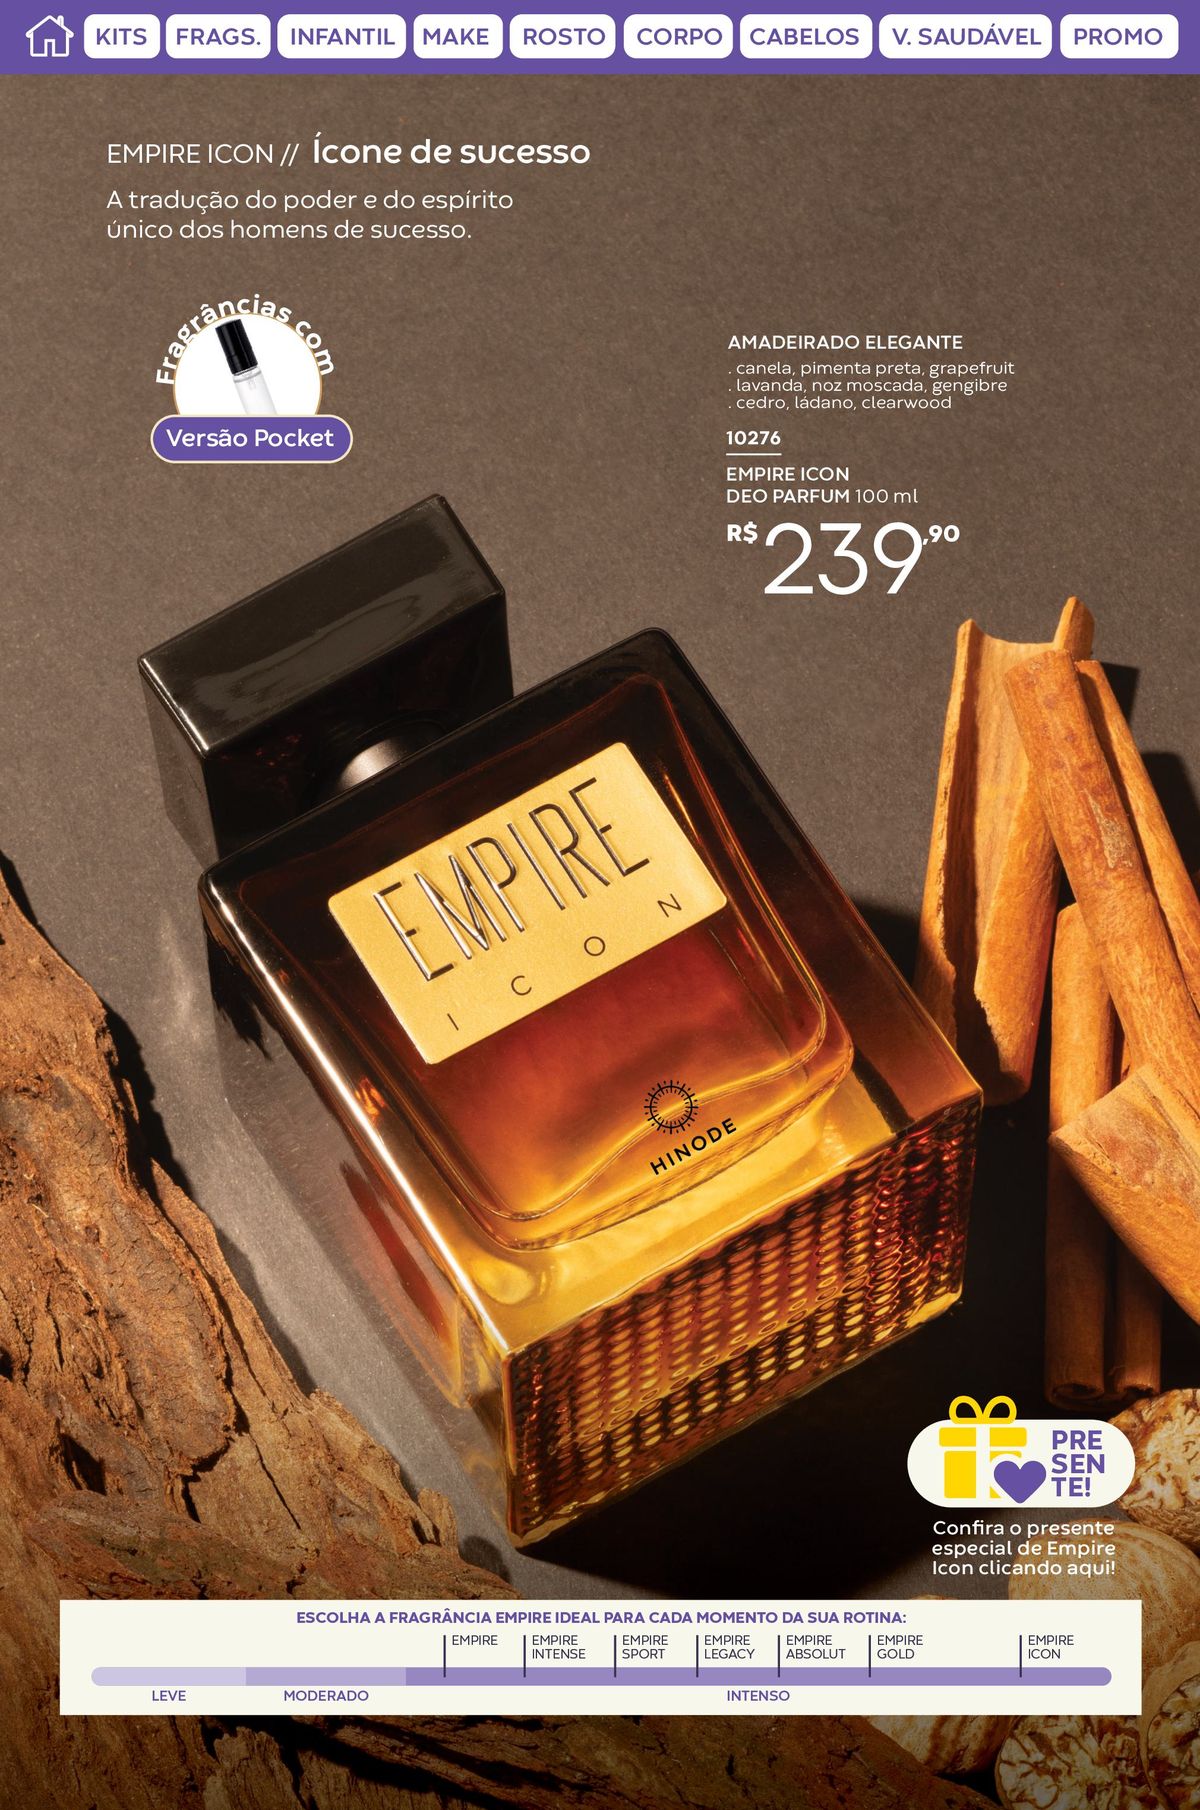 Fragrância Empire Icon de sucesso - Deo Parfum 100ml por R$230